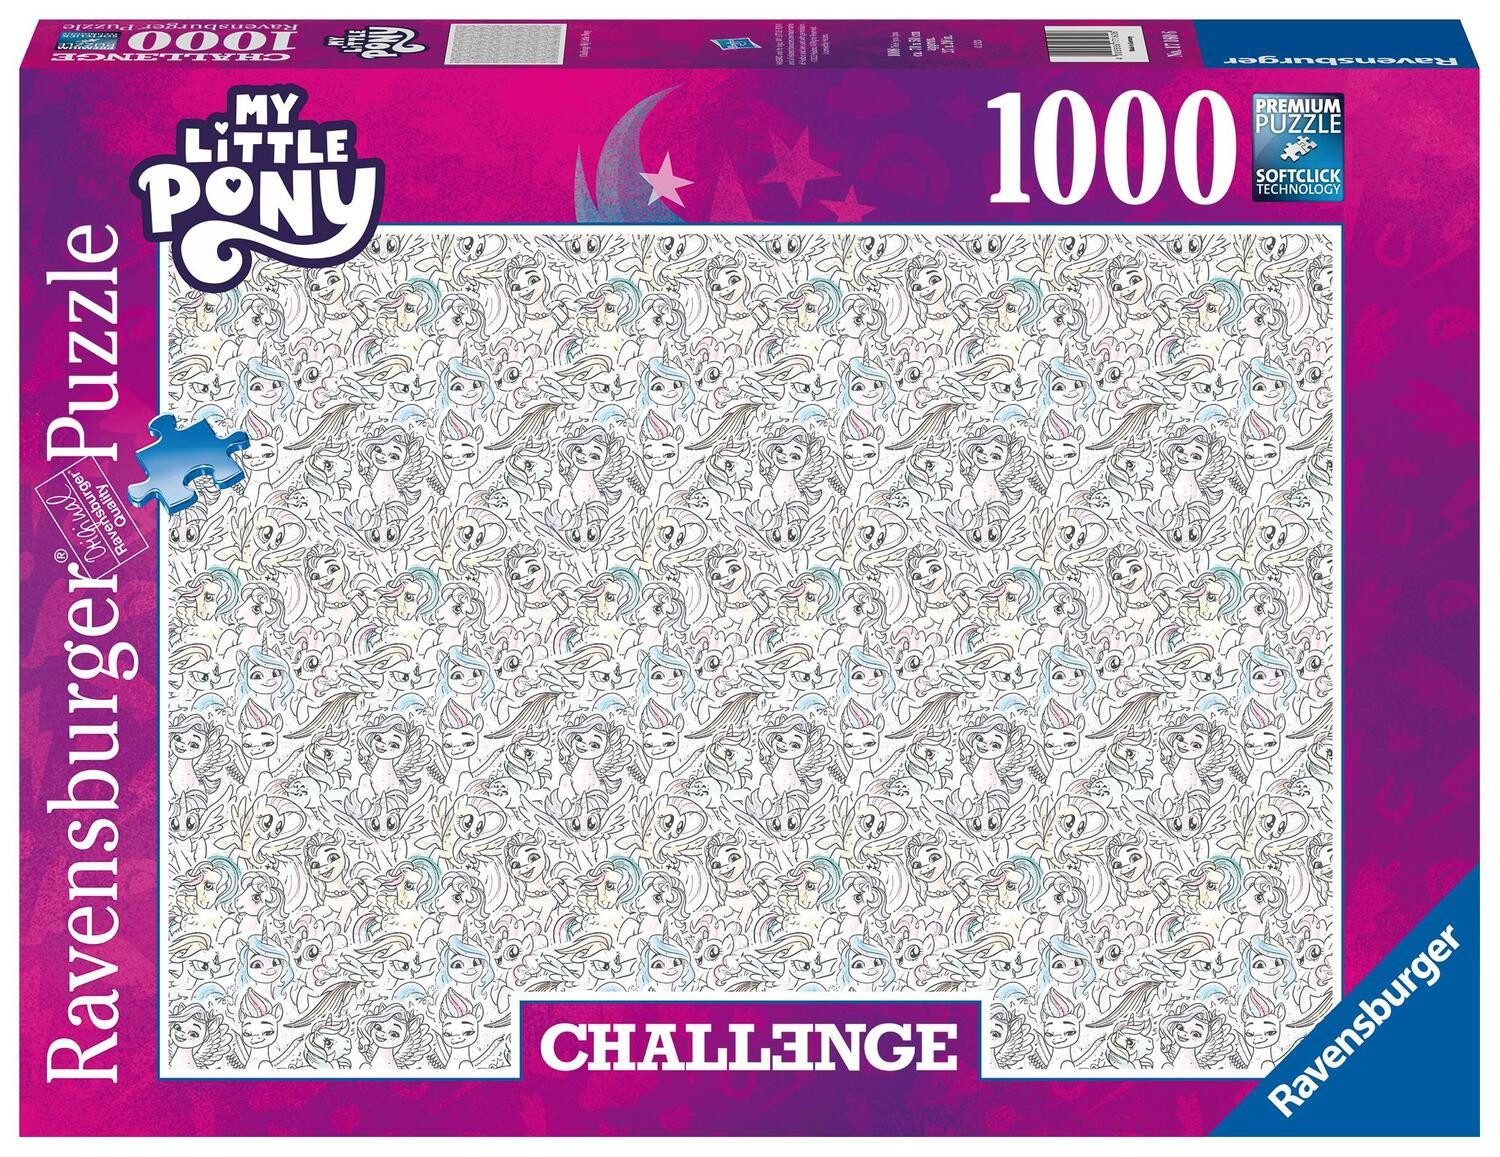 Ravensburger Puzzle Ravensburger Puzzle 17160 - My Little Pony - 1000 Teile Challenge..., 1000 Puzzleteile